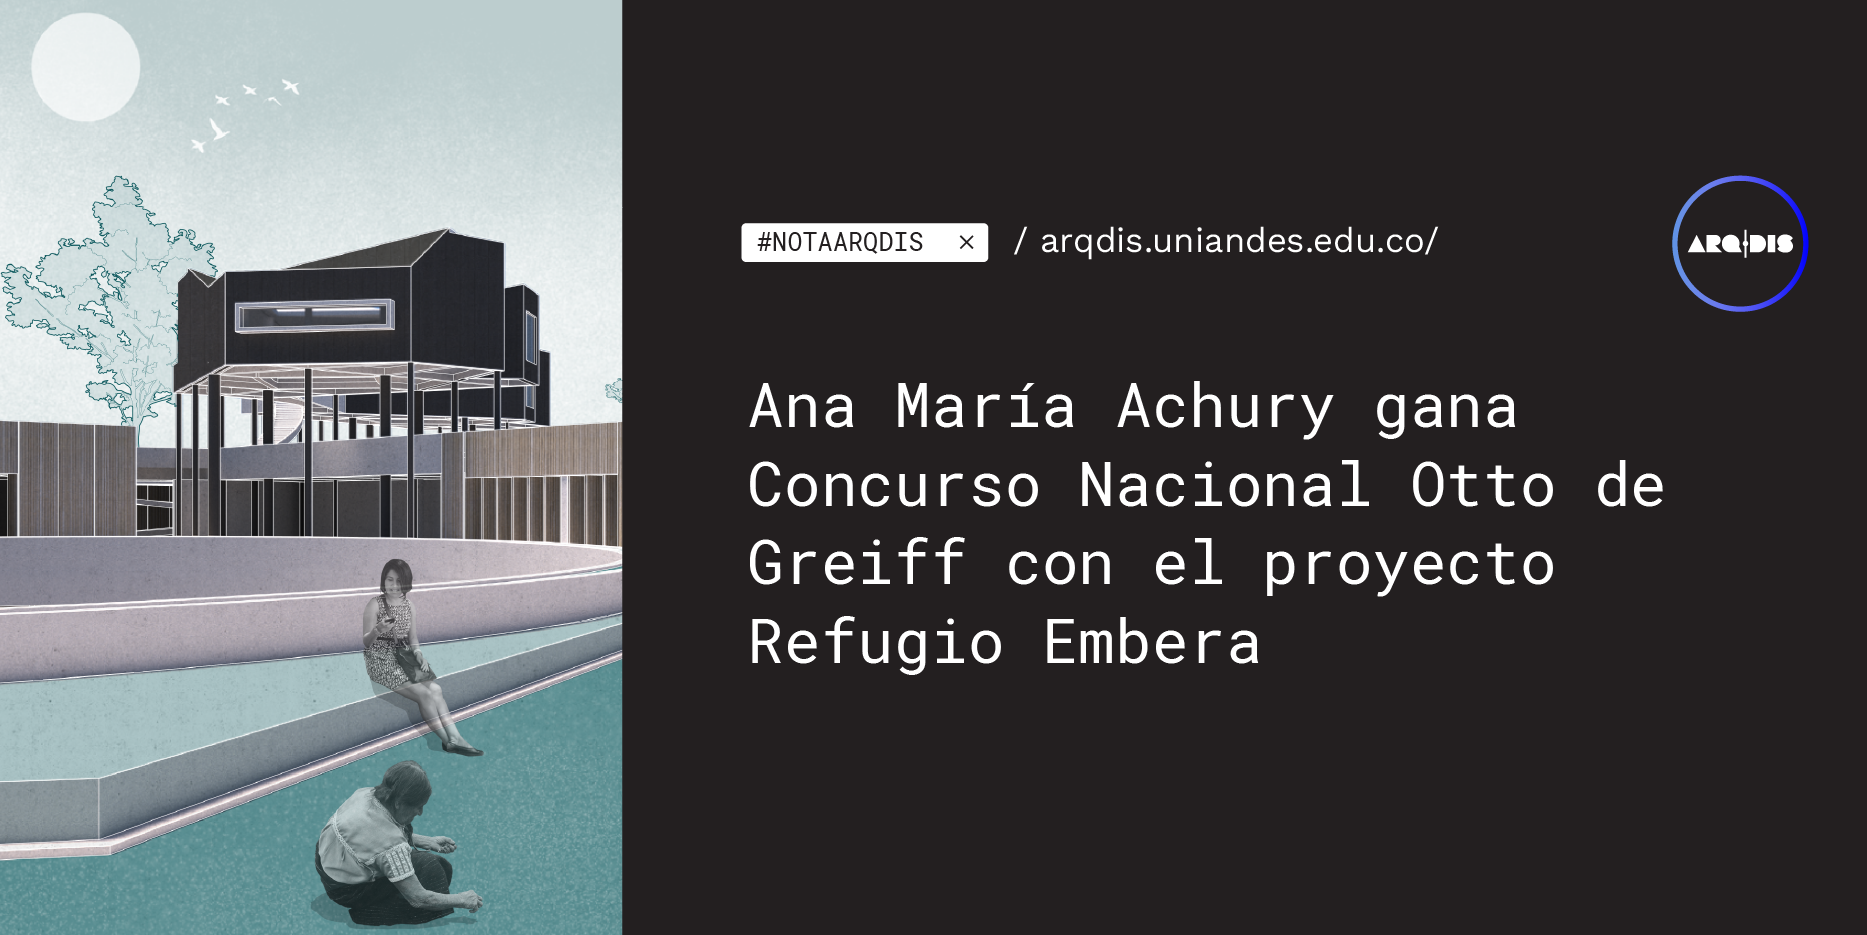 Ana María Achury gana Concurso Nacional Otto de Greiff con el proyecto Refugio Embera